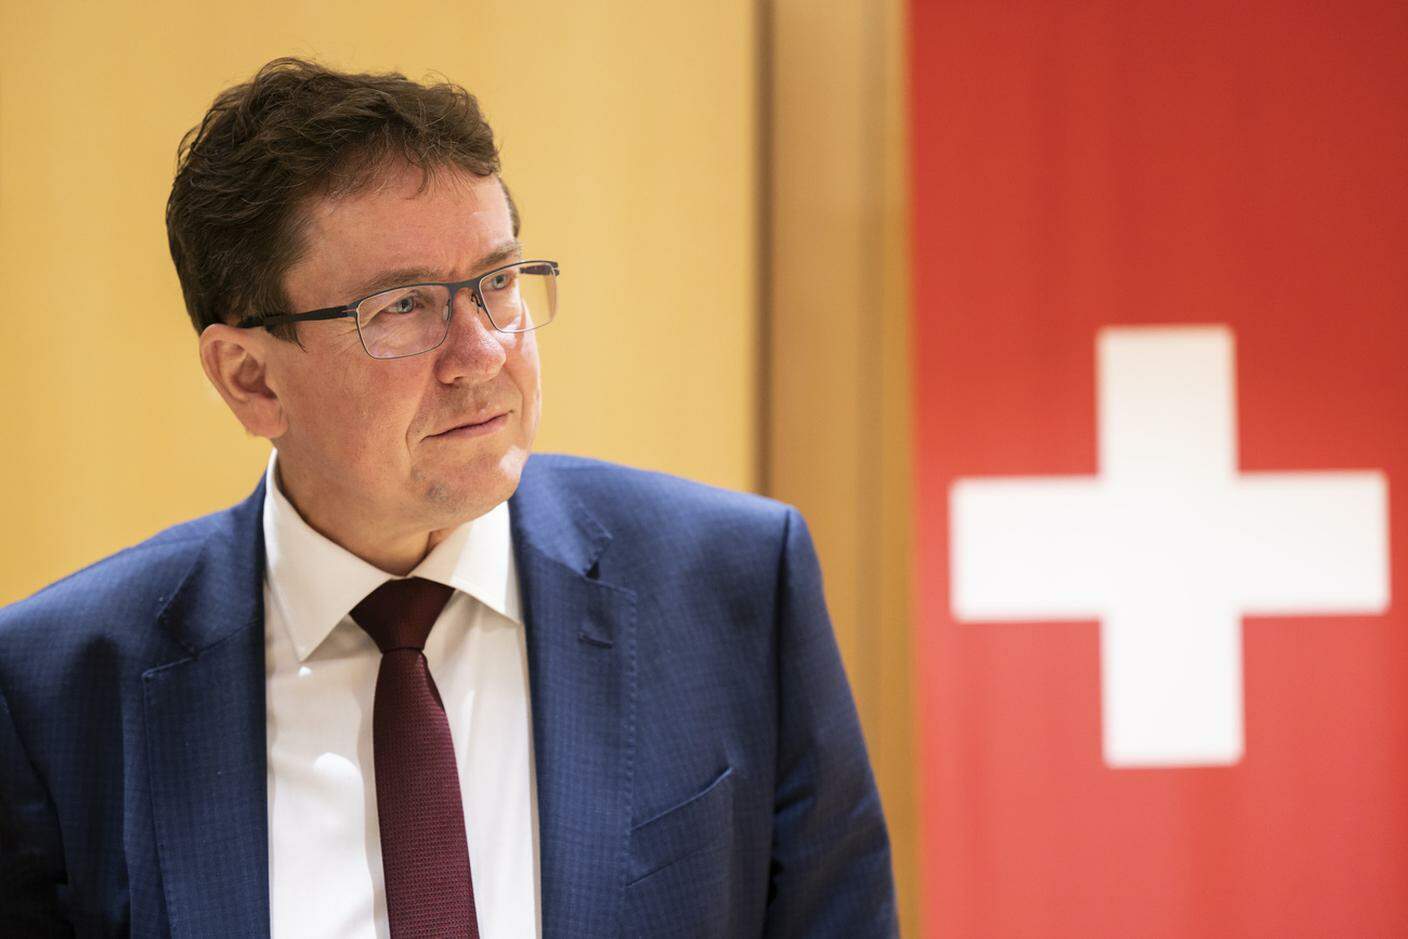 Già presidente dell'UDC svizzera, Albert Rösti è consigliere nazionale dal 2011